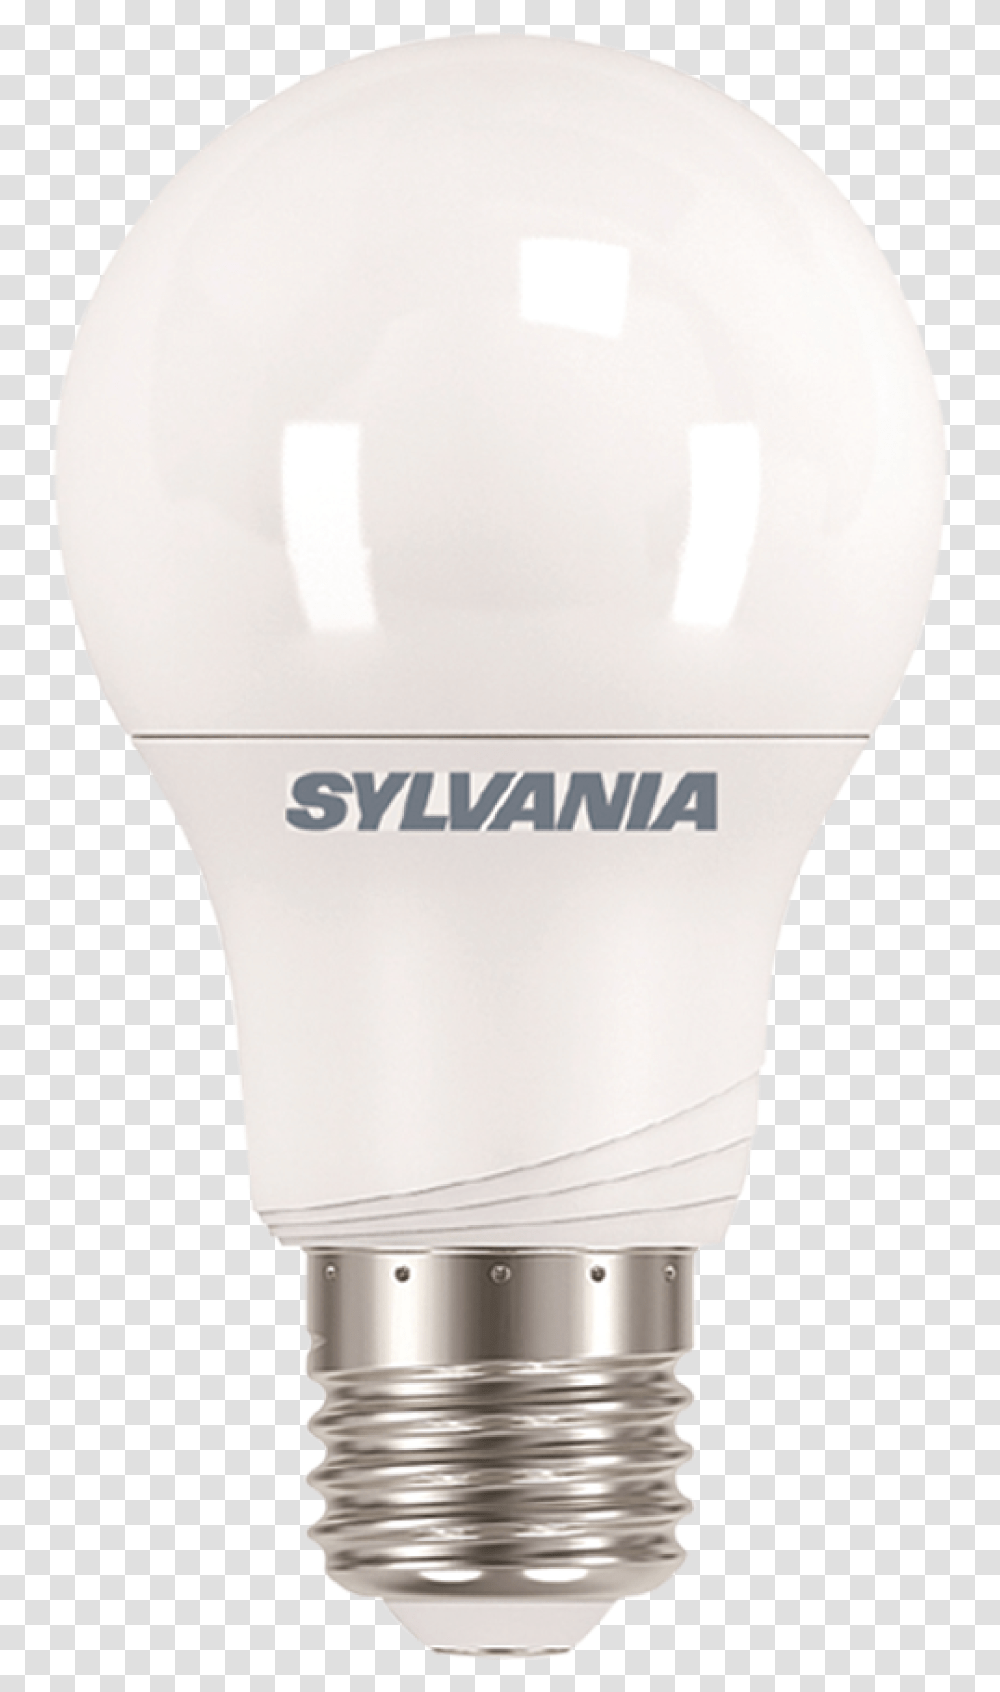 Download Hd Foco Incandescent Light Bulb Sylvania, Lightbulb, Mixer, Appliance, Helmet Transparent Png